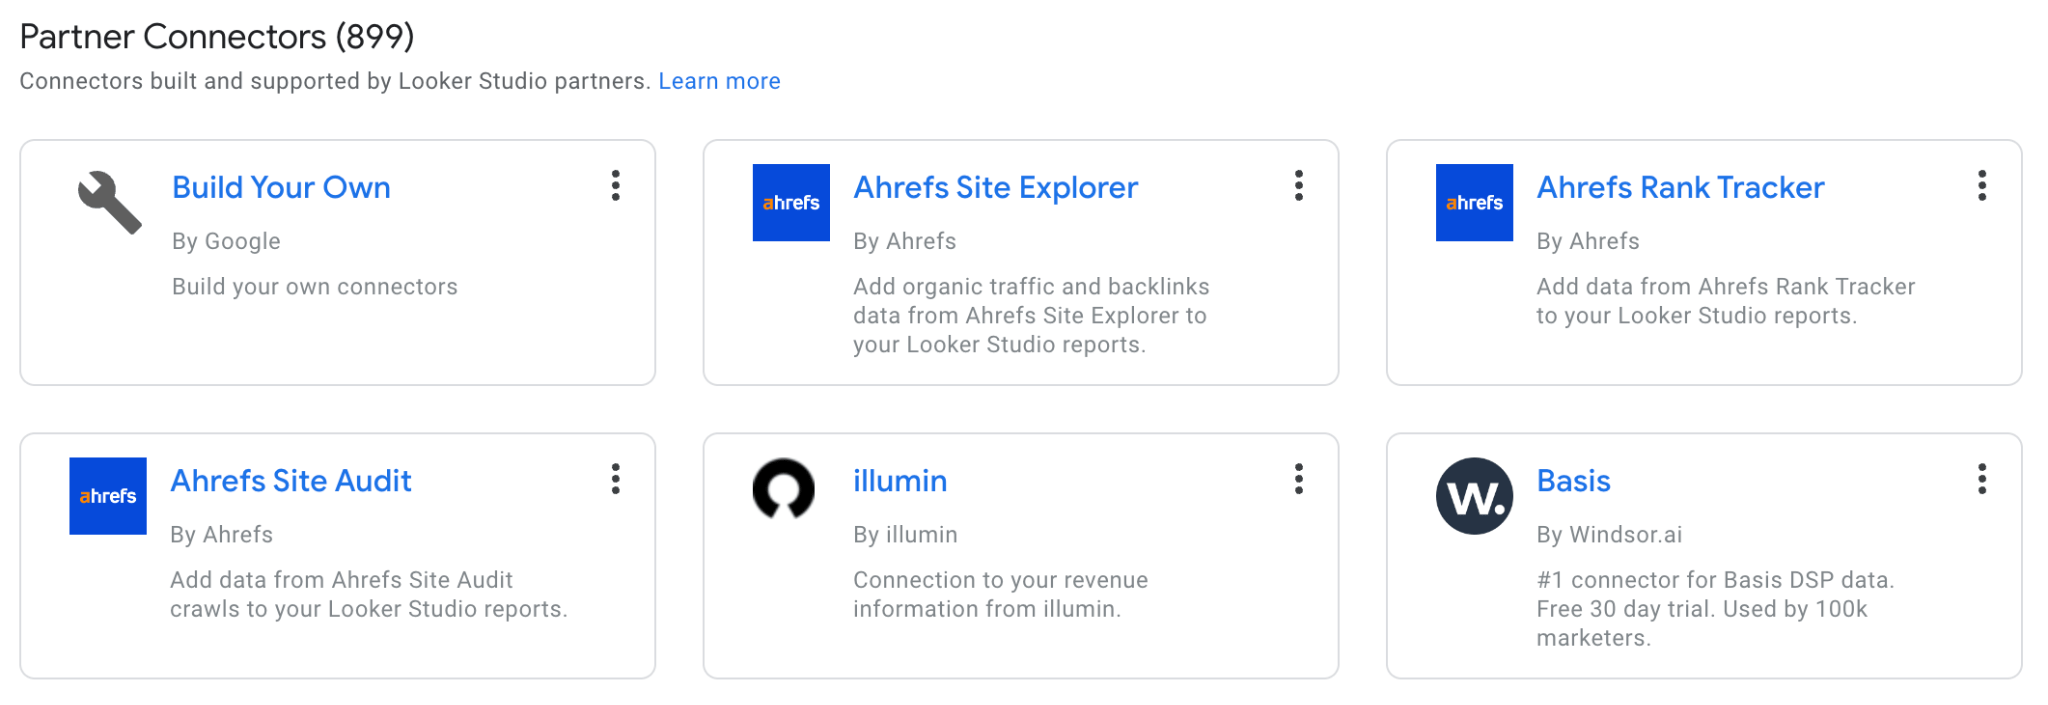 google-looker-studio-partner-connectors